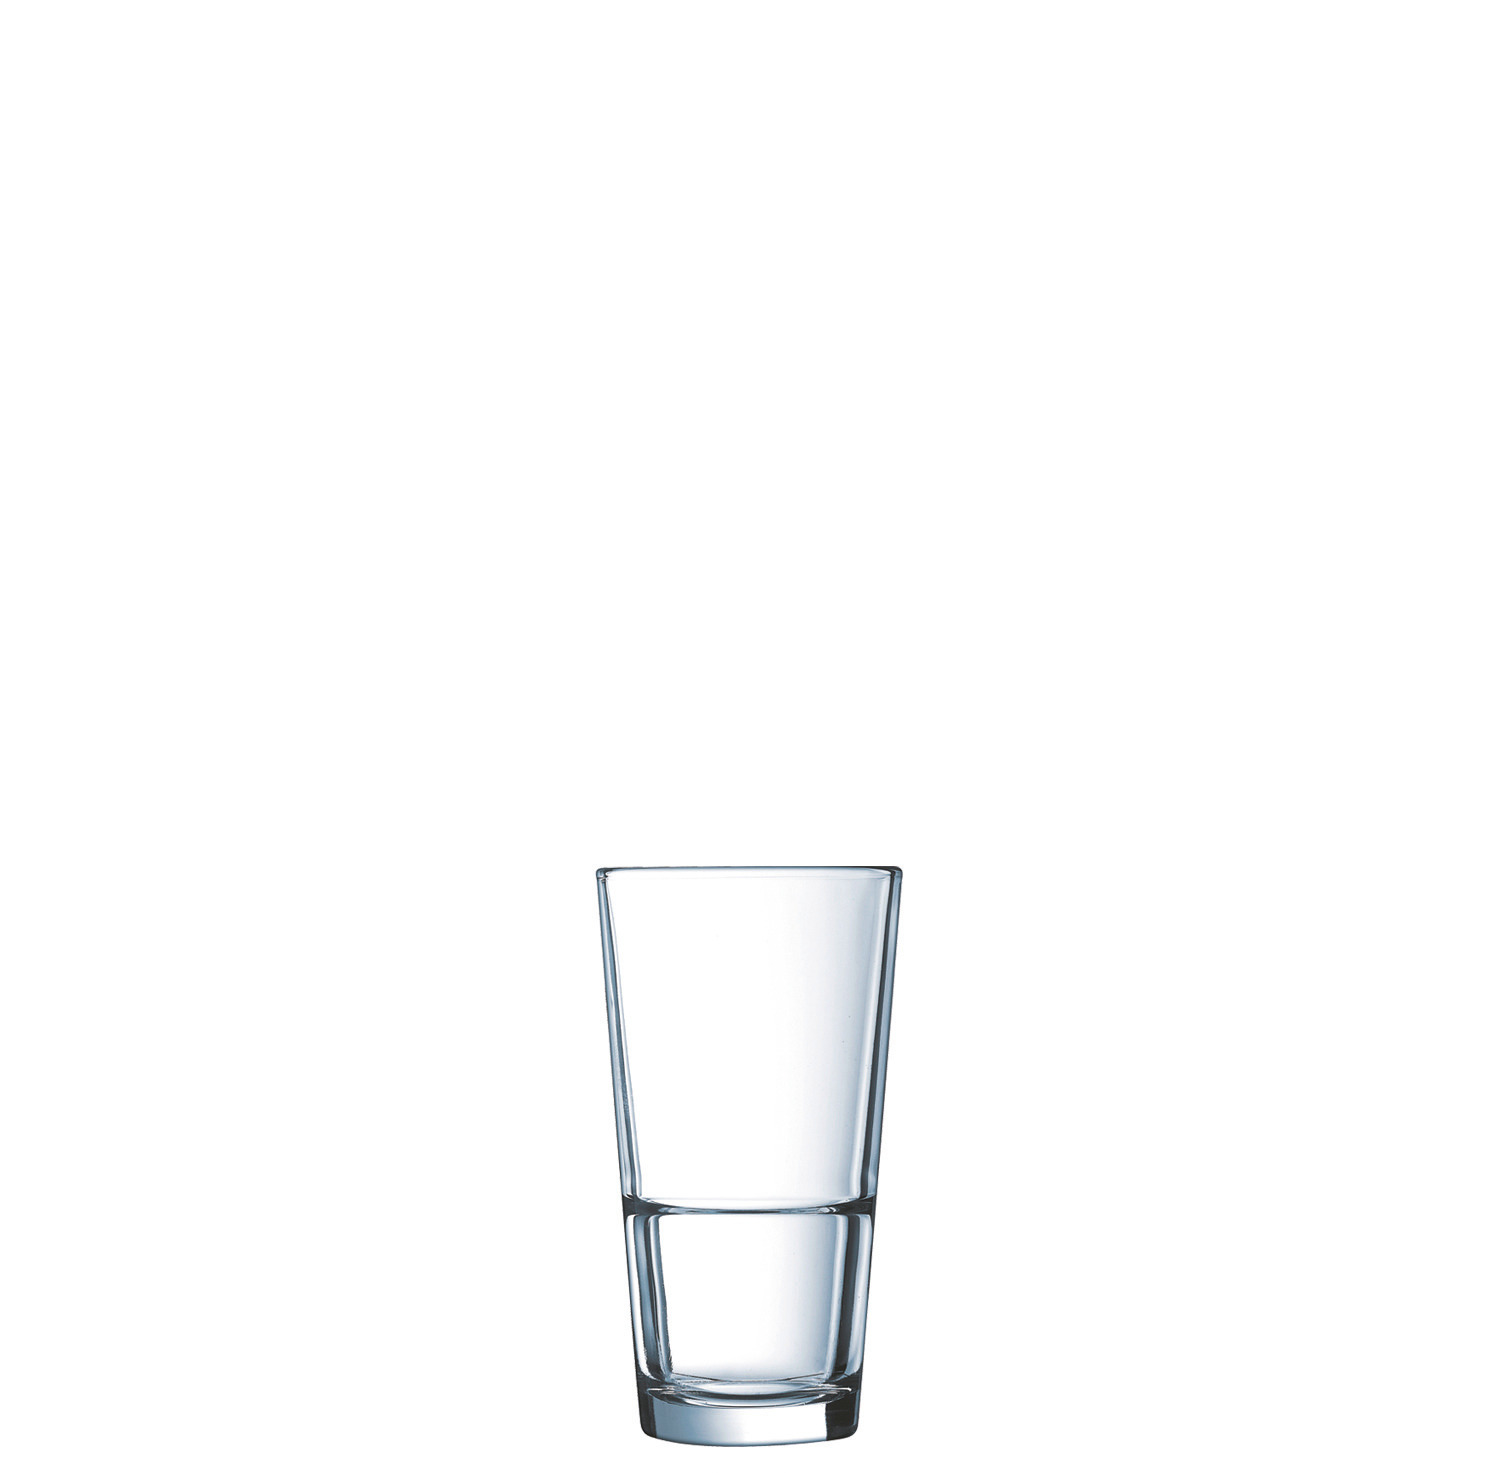 Longdrinkglas "FH29" stapelbar 76 mm / 0,29 l transparent